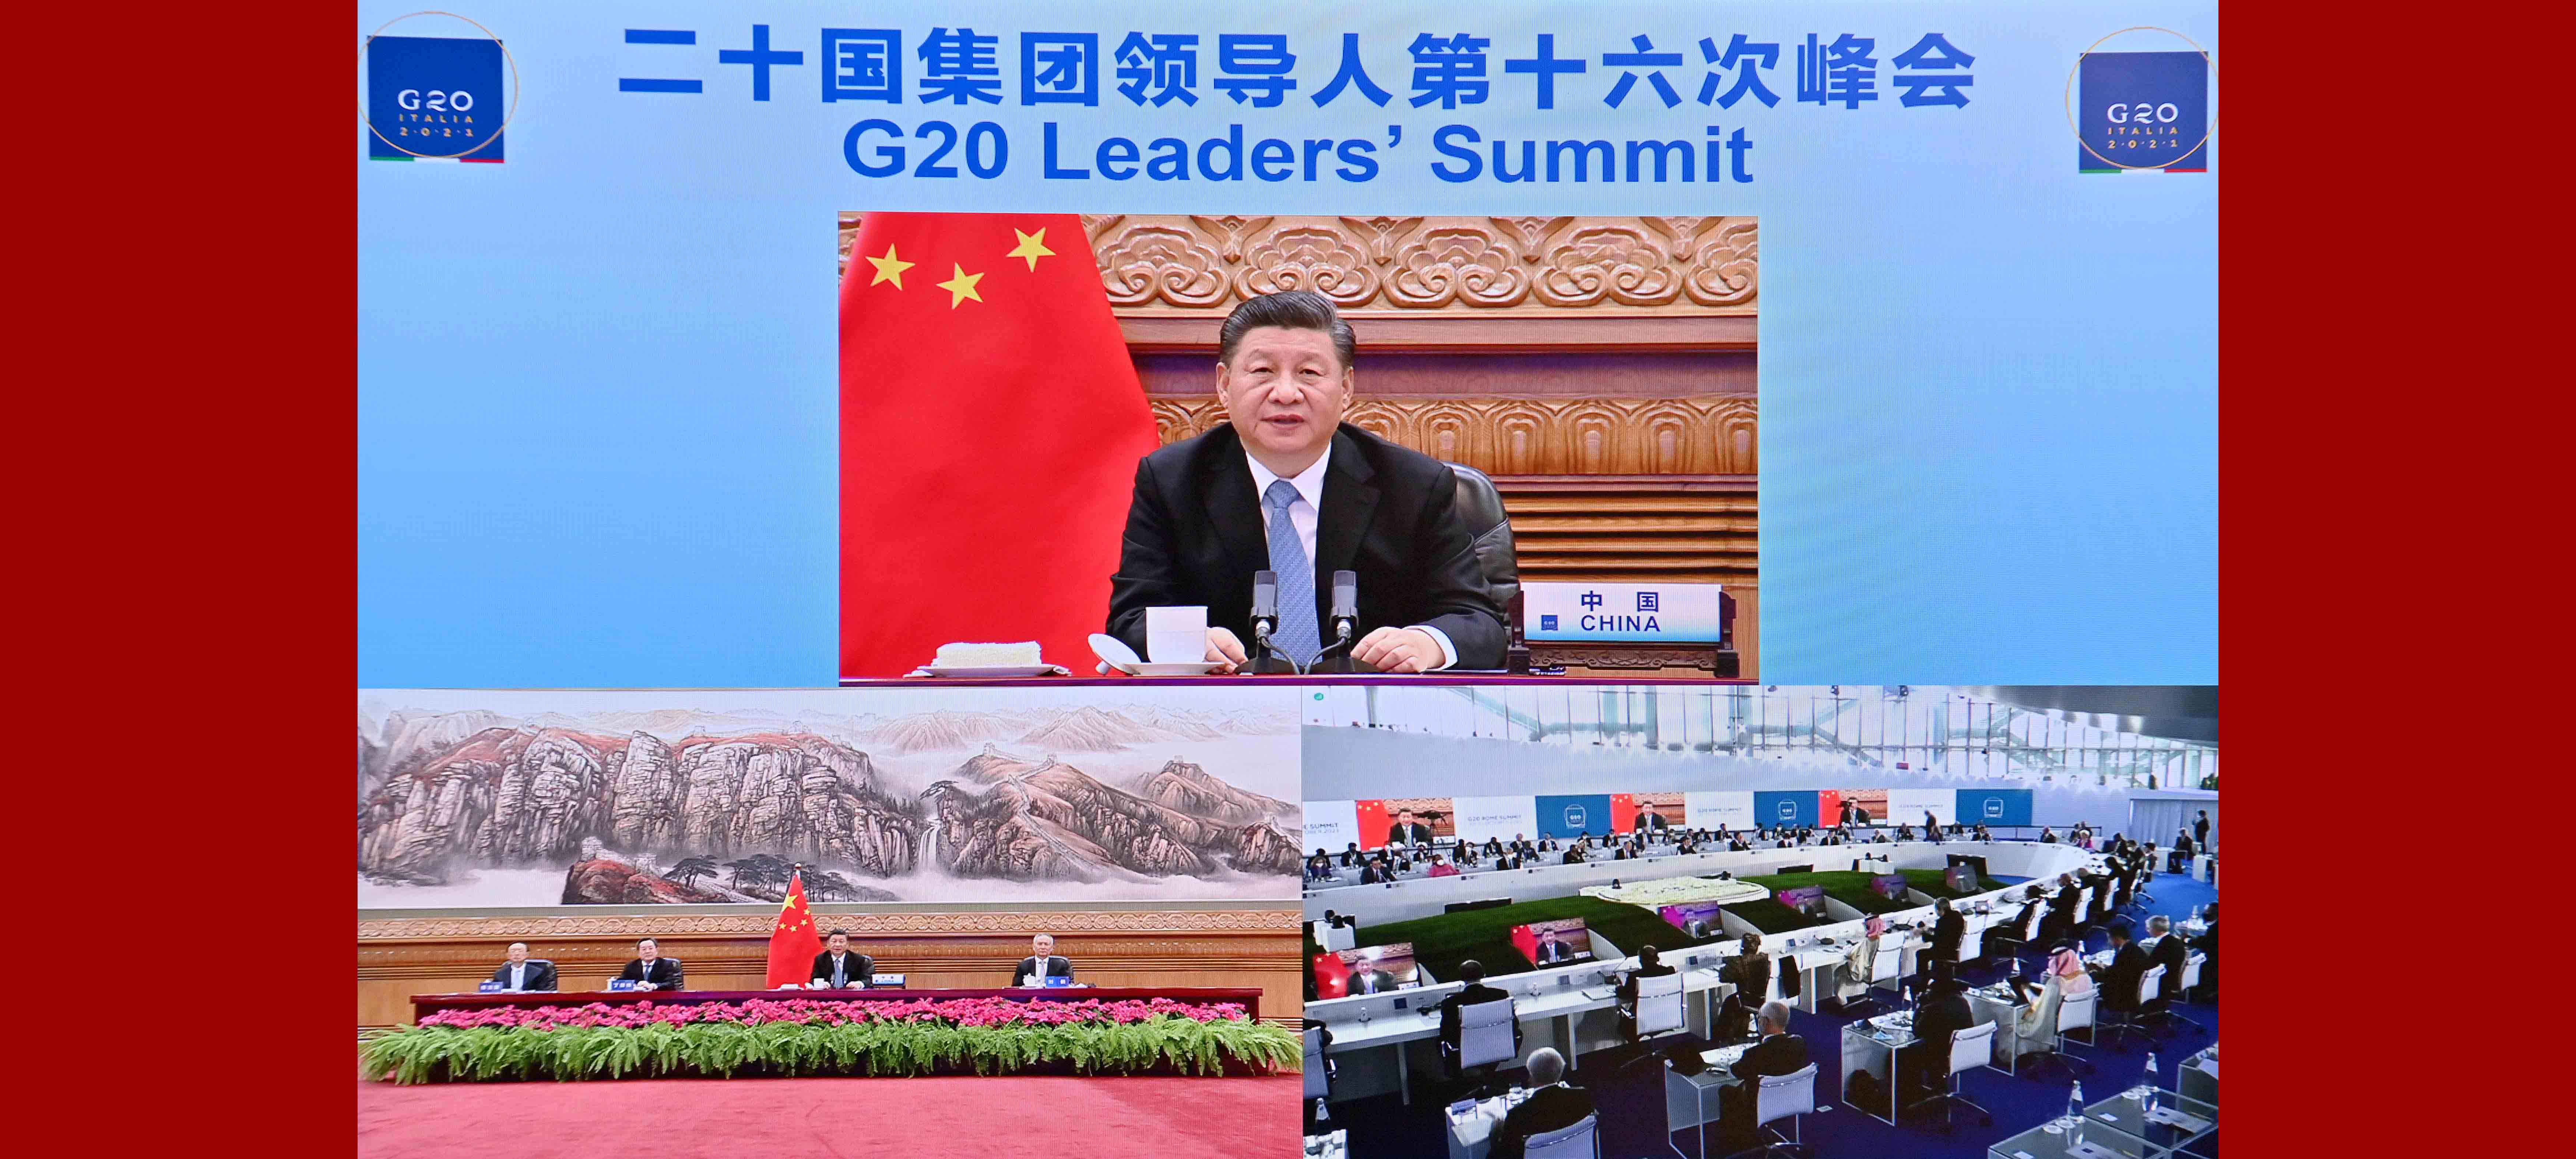 Xi pede ações concretas para enfrentar conjuntamente os desafios globais